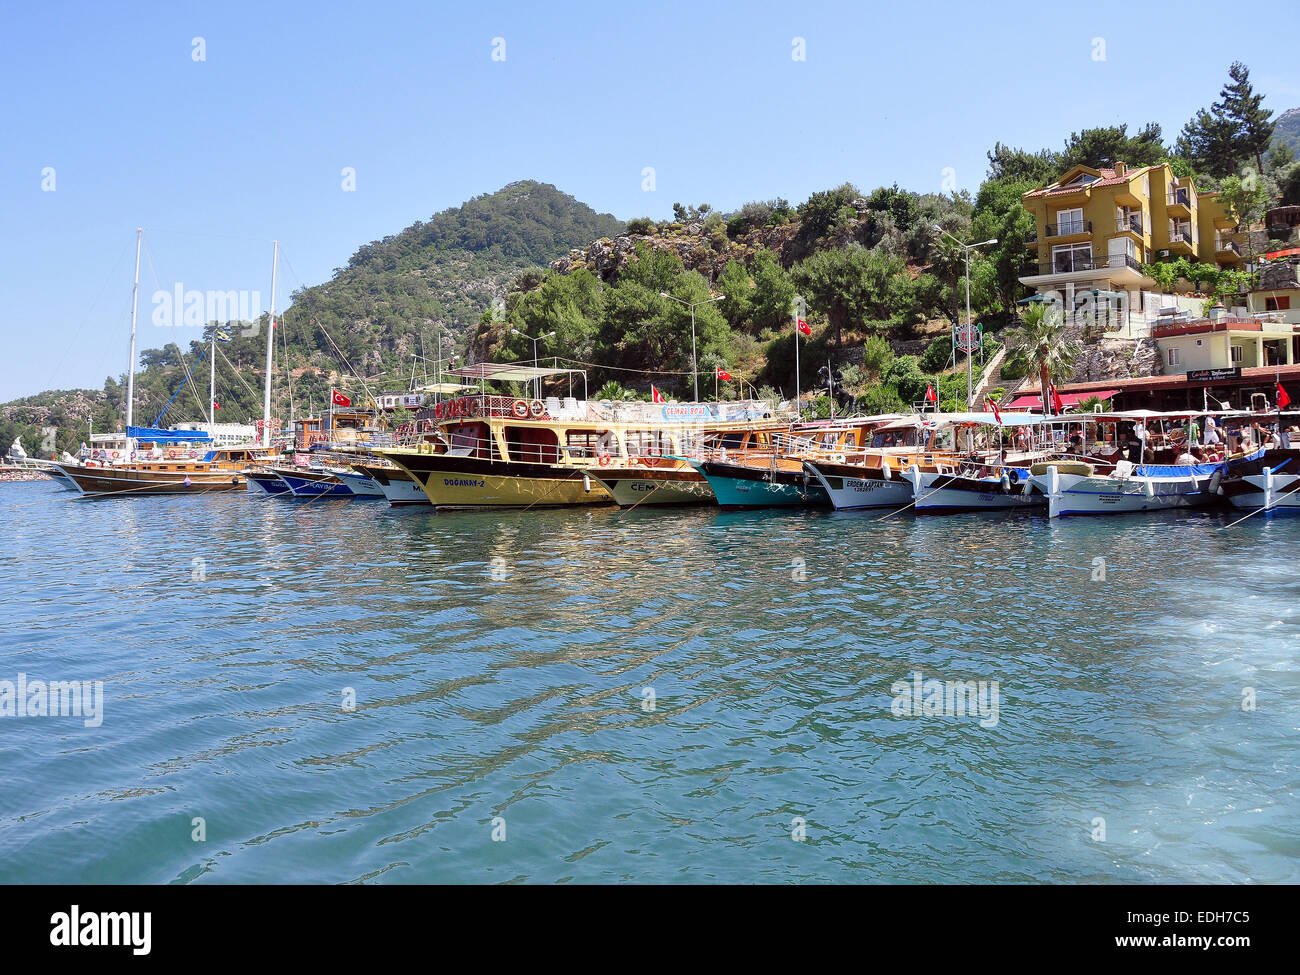 Los barcos turísticos de madera de Marmaris se alinean en el puerto de Turunc, si bien los turistas visitar el mercado local. Foto de stock